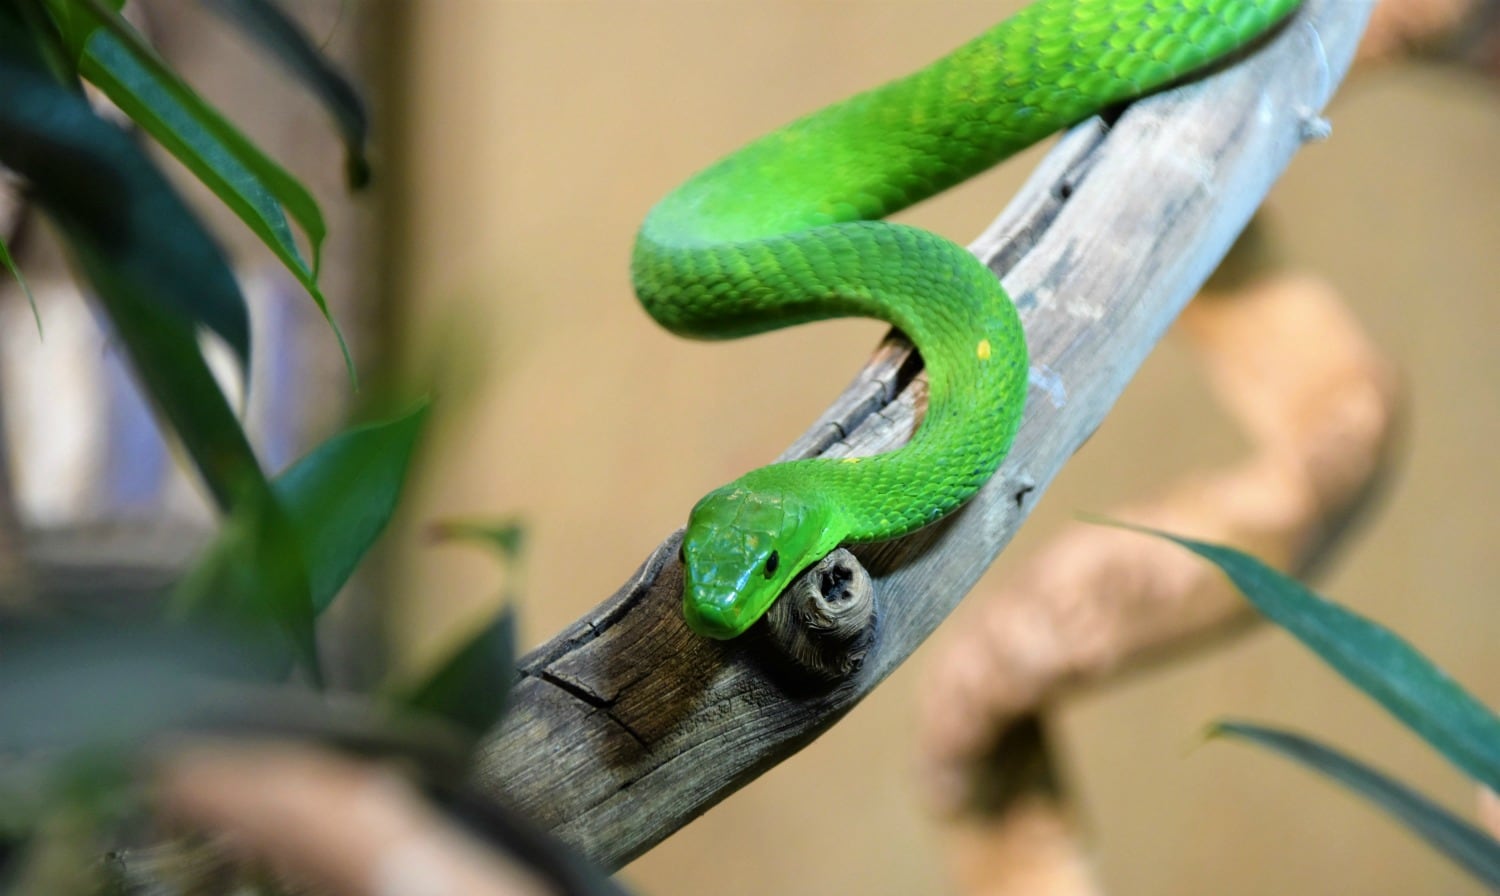 Beneficios de tener serpientes como mascotas